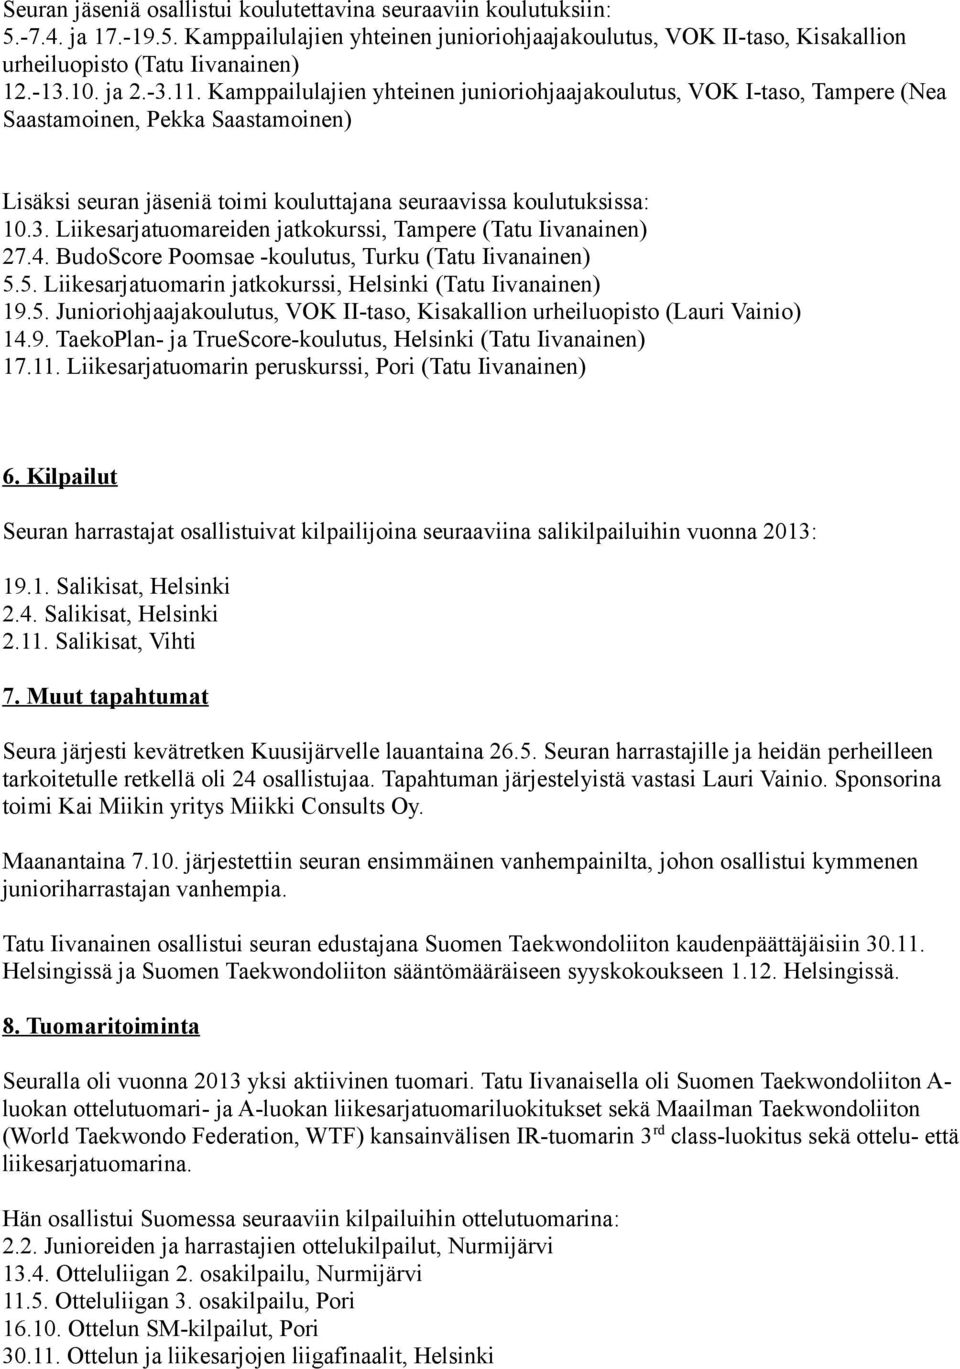 4. BudoScore Poomsae -koulutus, Turku (Tatu Iivanainen) 5.5. Liikesarjatuomarin jatkokurssi, Helsinki (Tatu Iivanainen) 19.5. Junioriohjaajakoulutus, VOK II-taso, Kisakallion urheiluopisto (Lauri Vainio) 14.